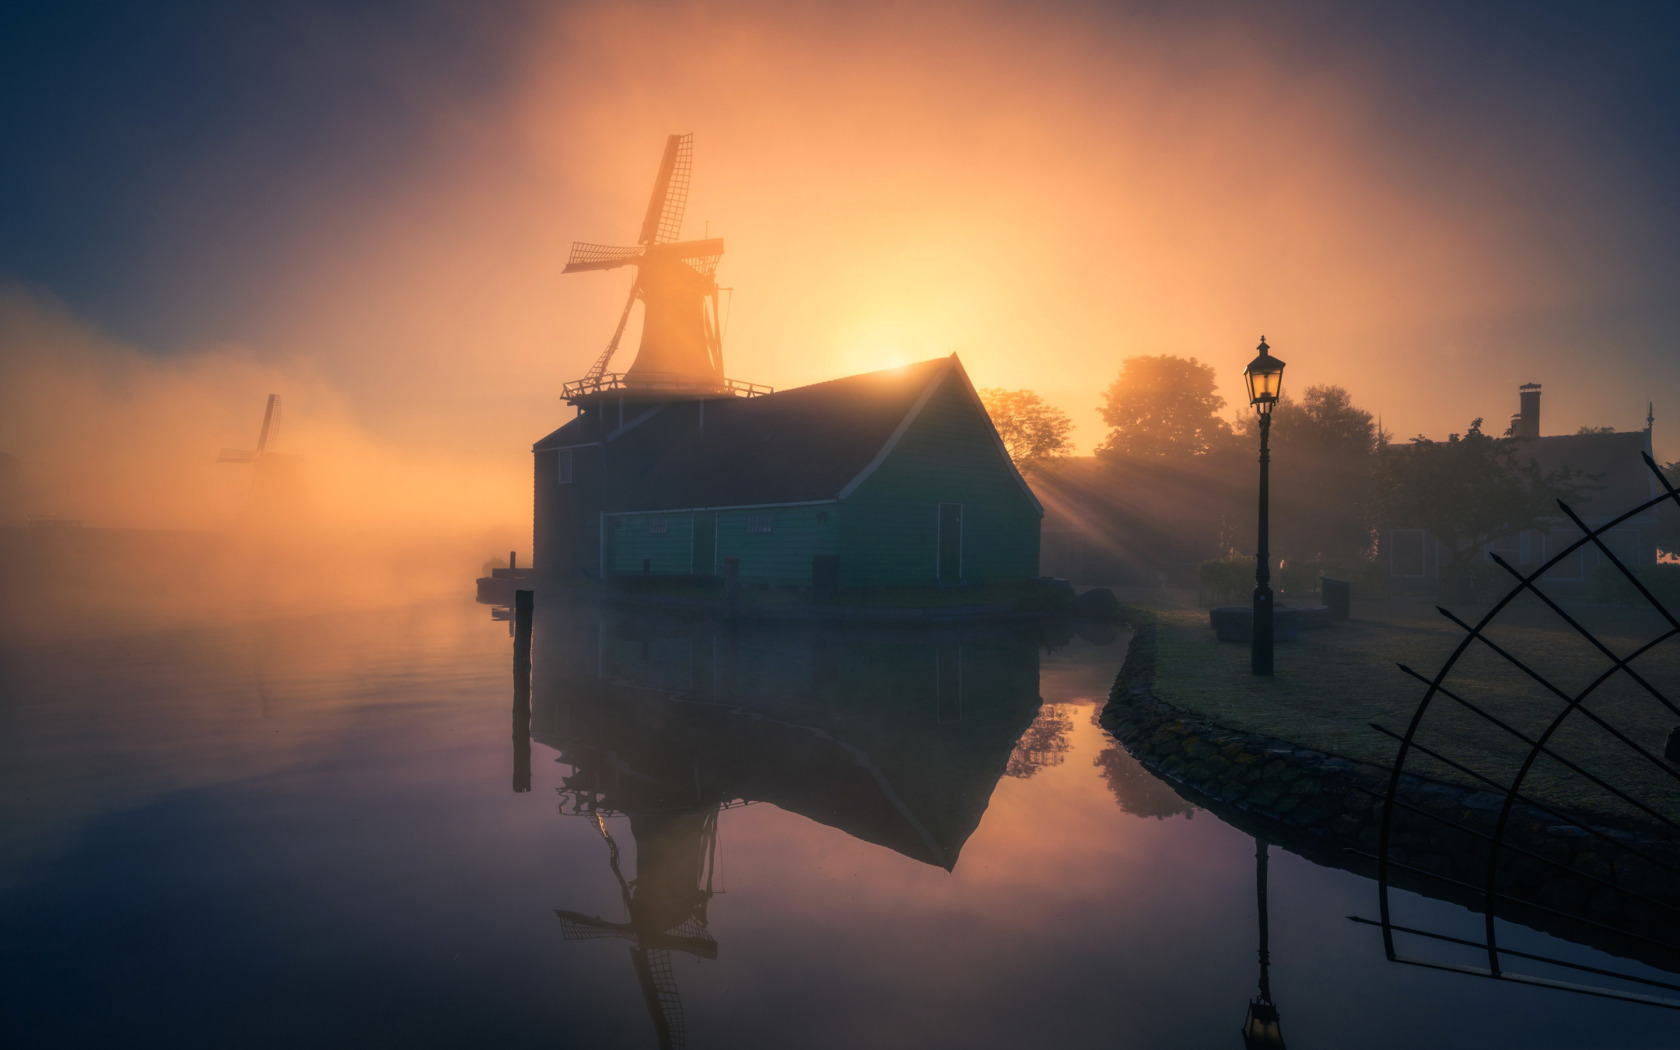 Песня доброе утро на голландском. Мельница в тумане. Ветряная мельница в тумане. Туман Голландия. Мельницы Нидерланд туман.